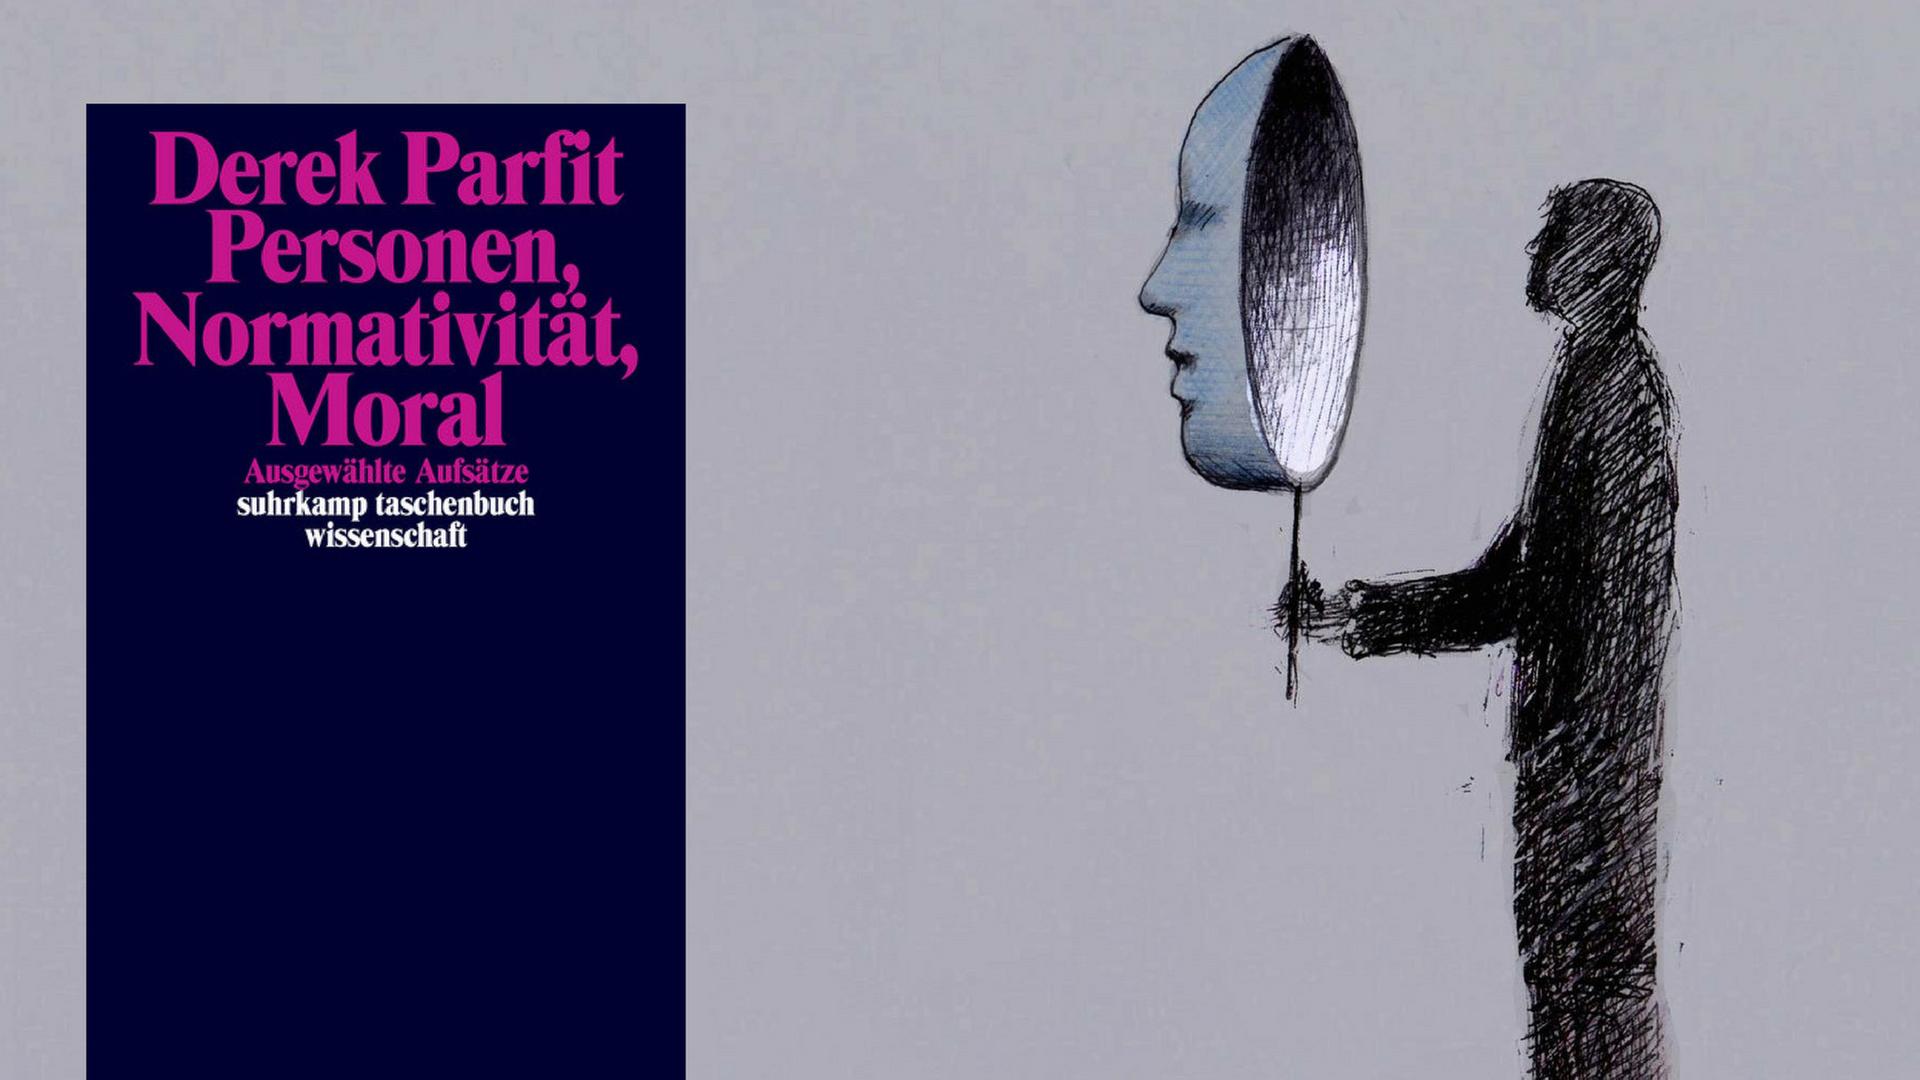 Buchcover von Derek Parfit "Personen, Normativität, Moral" - im Hintergrund die Zeichnung eines Mannes mit einer Maske.